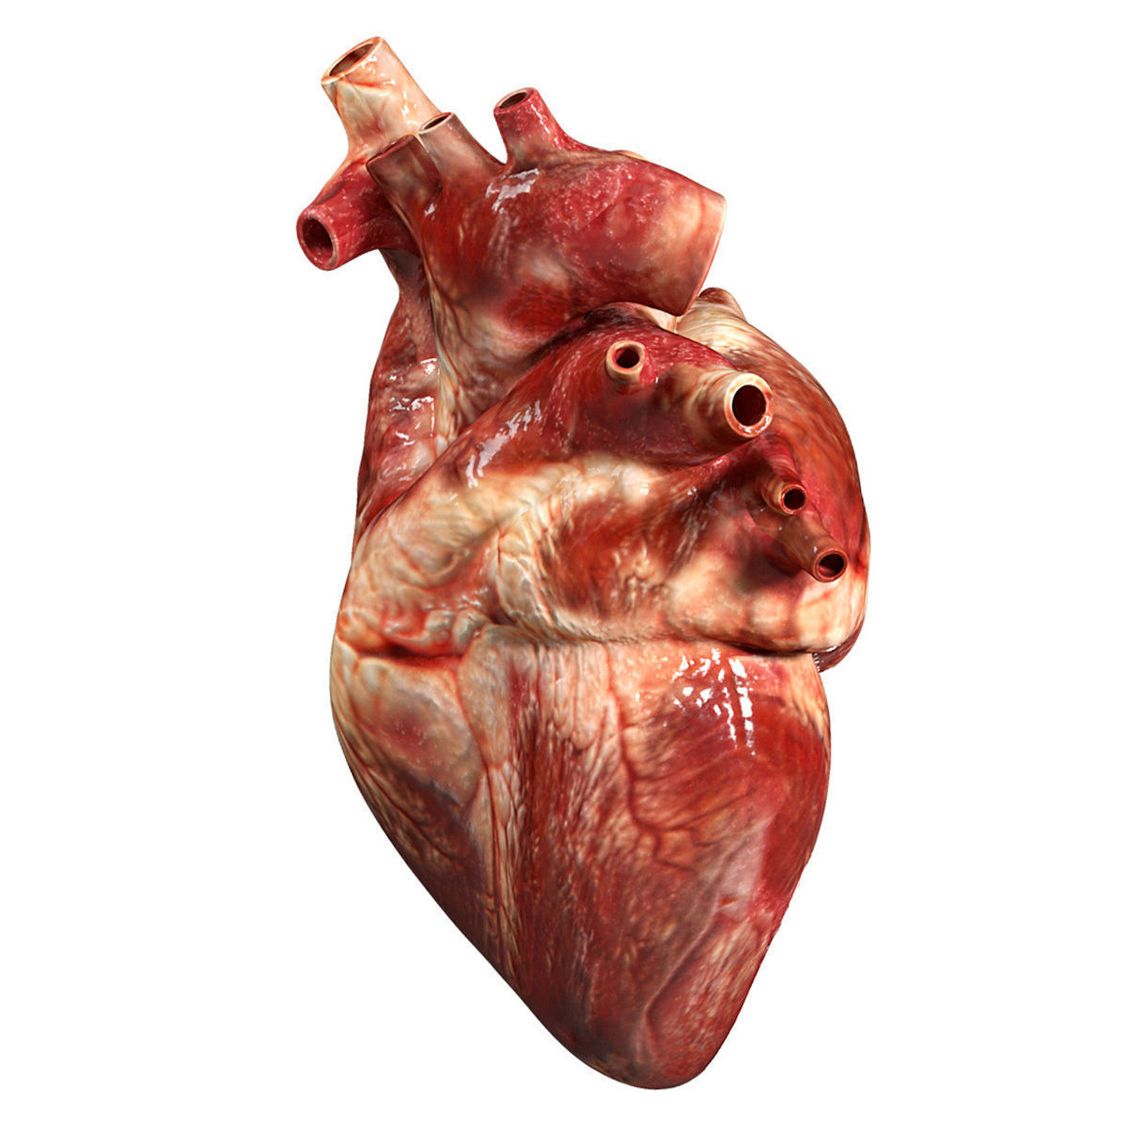 Сердце человека настоящее